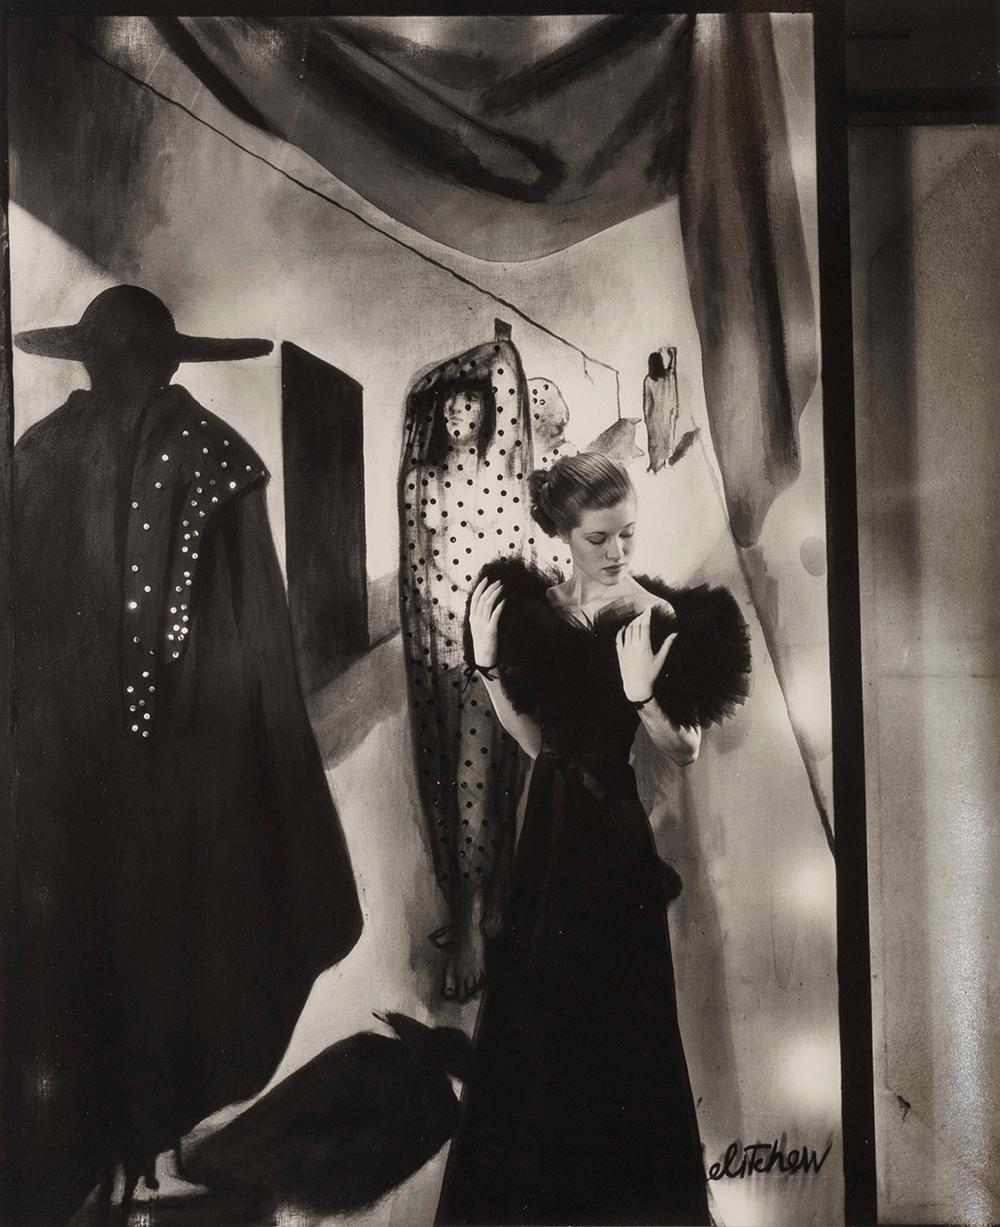 Mary Taylor, ca. 1934 - Cecil Beaton (Porträtfotografie/Modefotografie)
Von unbekannter Hand mit "Mary Taylor" beschriftet und auf der Rückseite mit einem Copyright-Tintenstempel des Fotografen versehen
Silbergelatineabzug, gedruckt um 1960
9 1/4 x